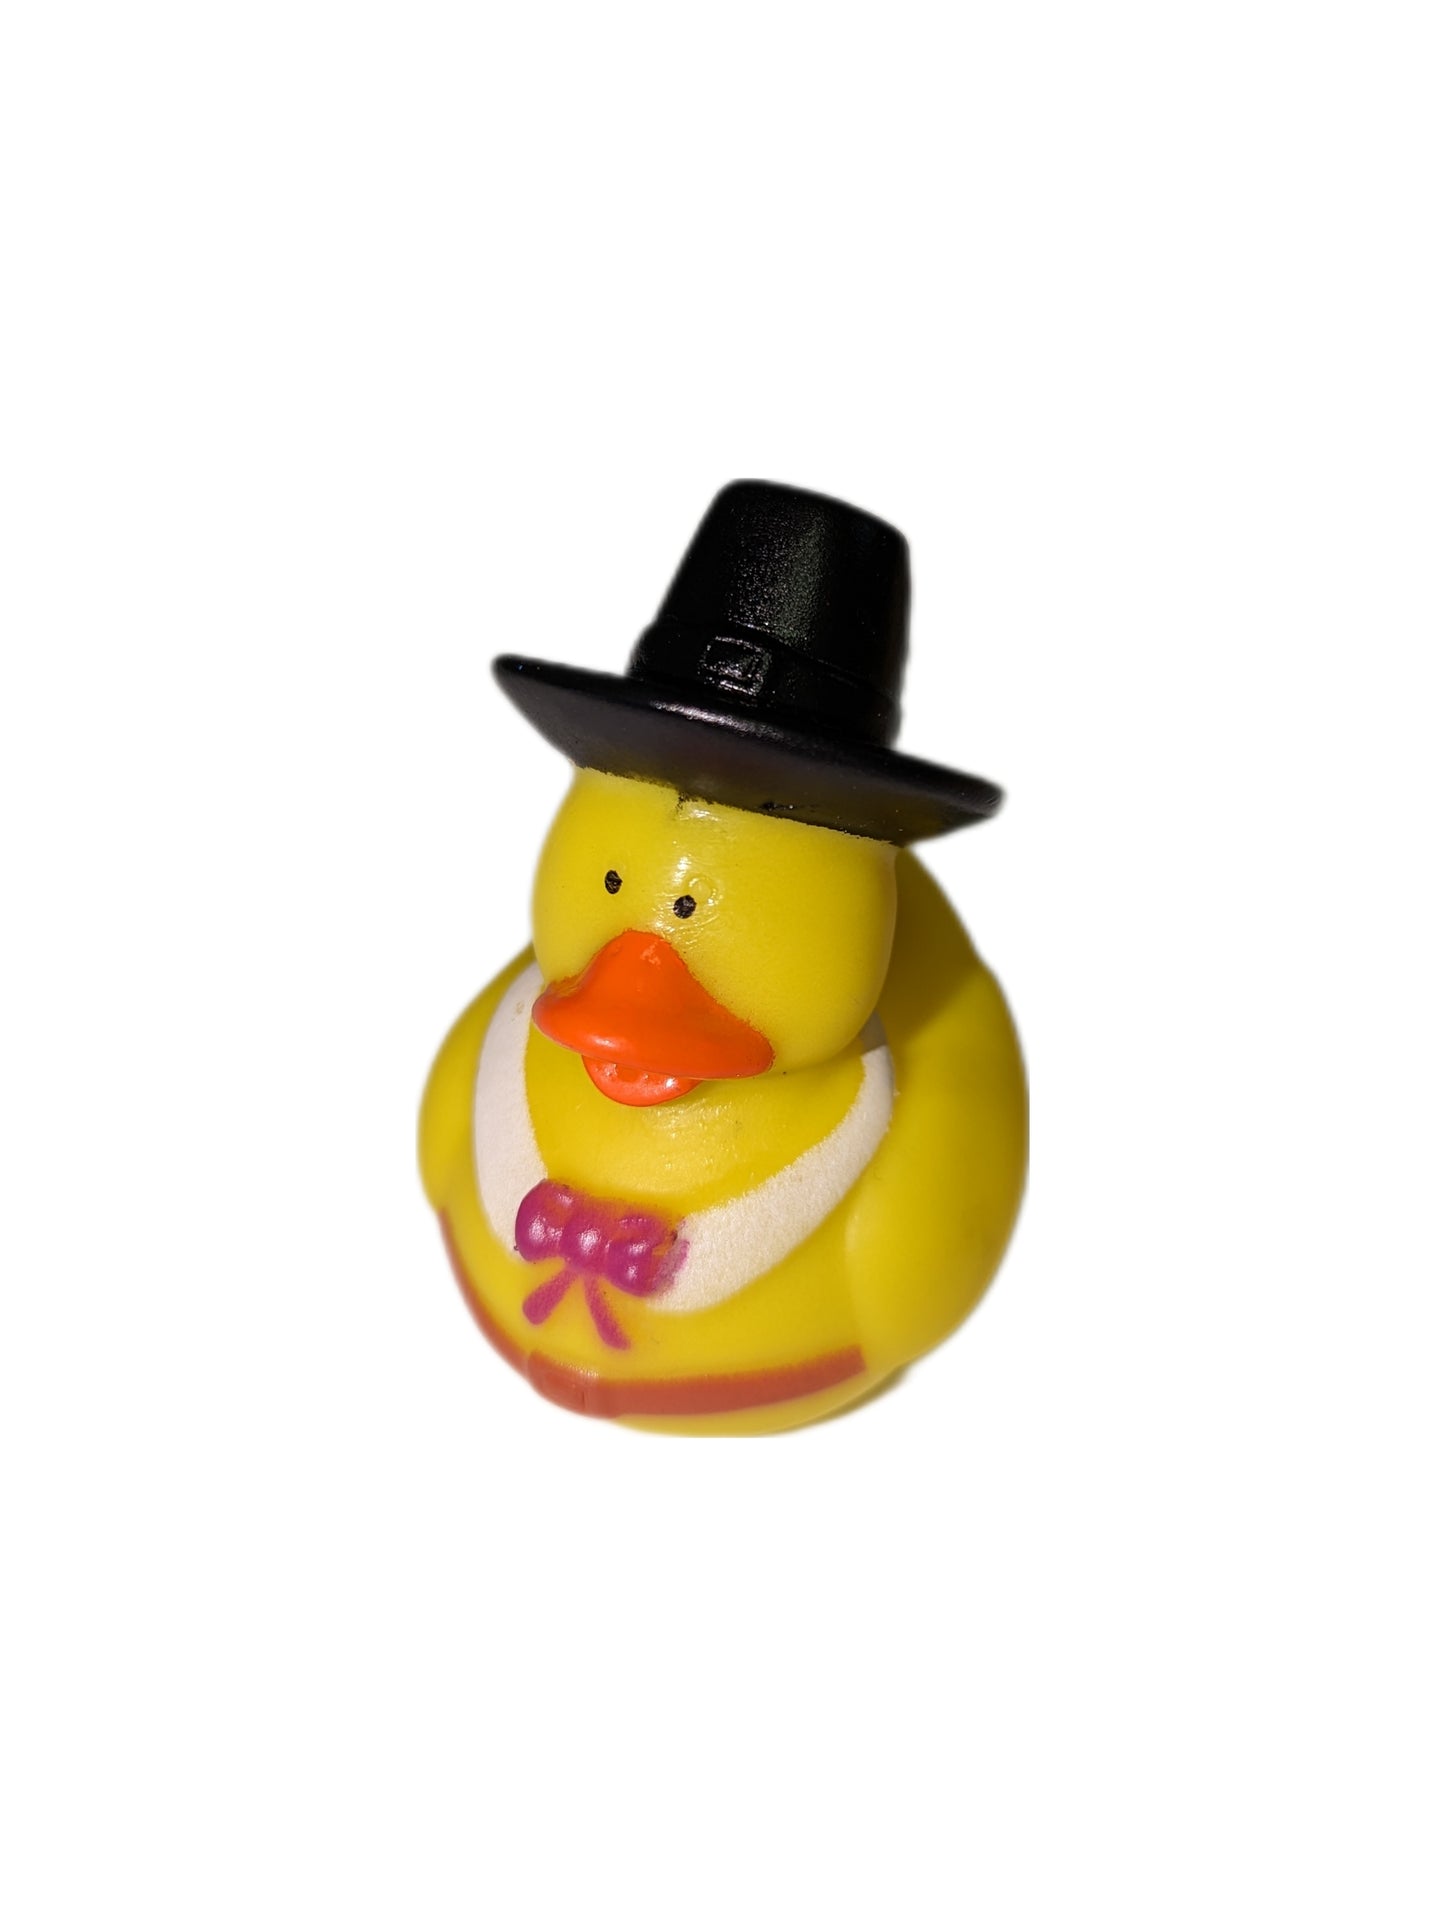 10 Thanksgiving Pilgrims - 2" Rubber Ducks